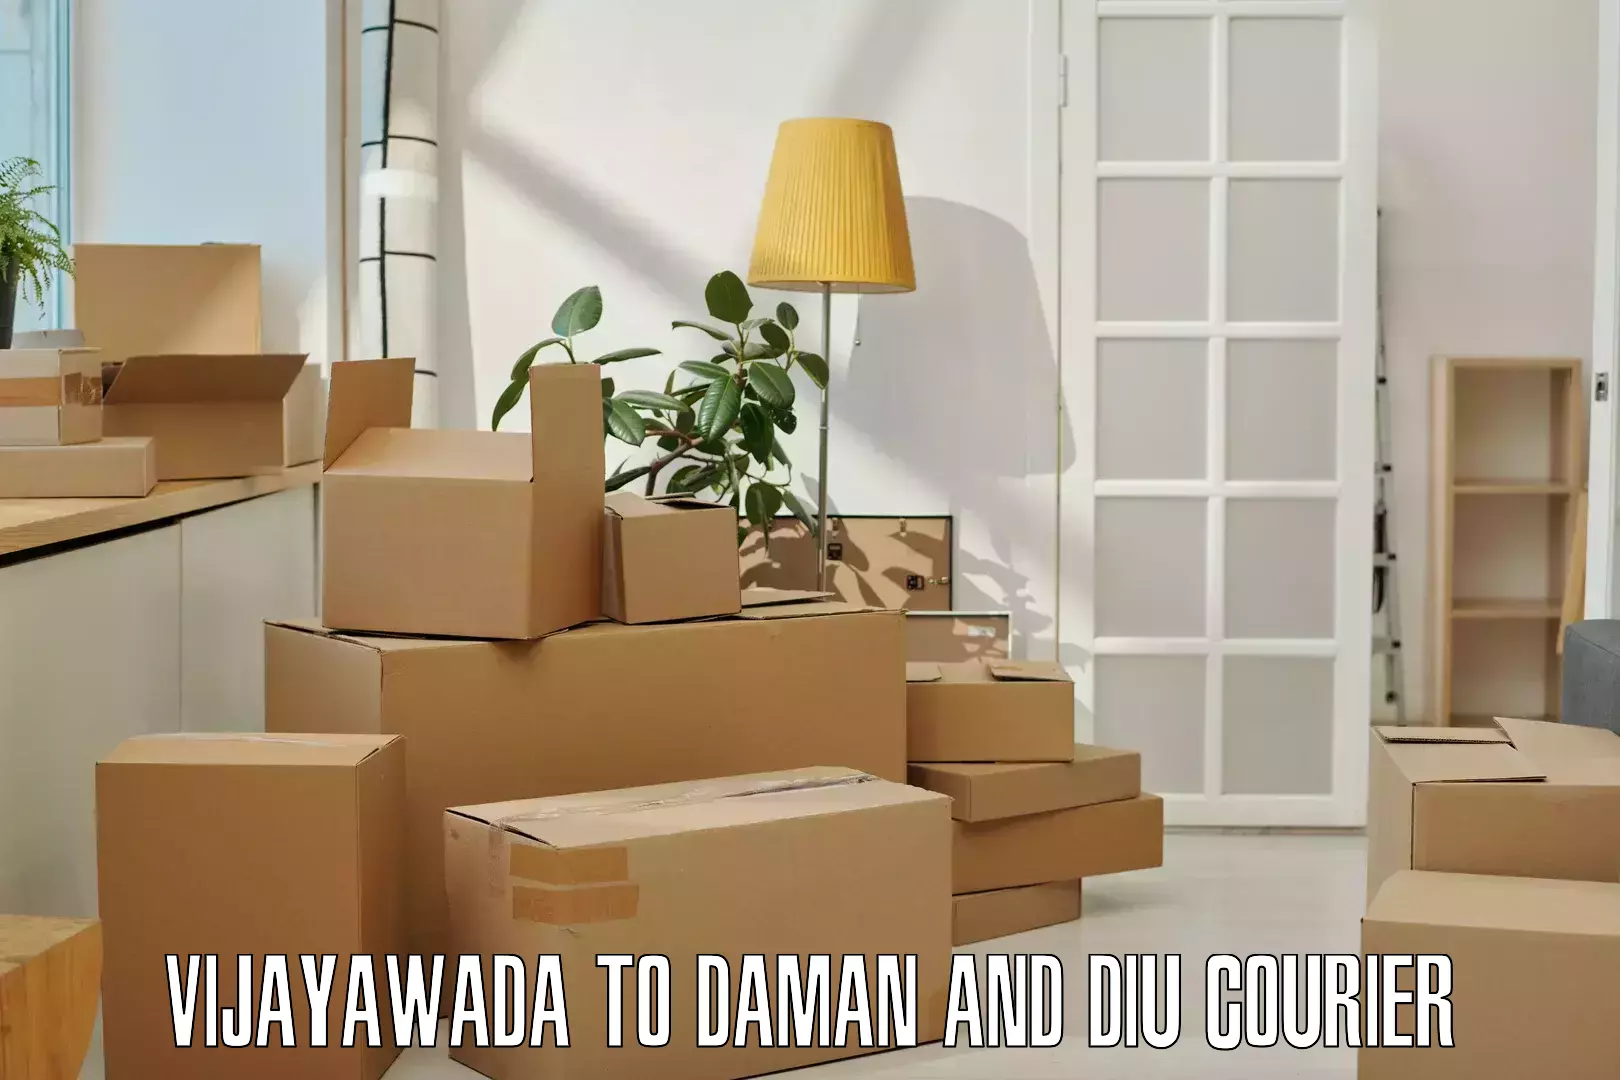 Premium courier solutions Vijayawada to Daman and Diu